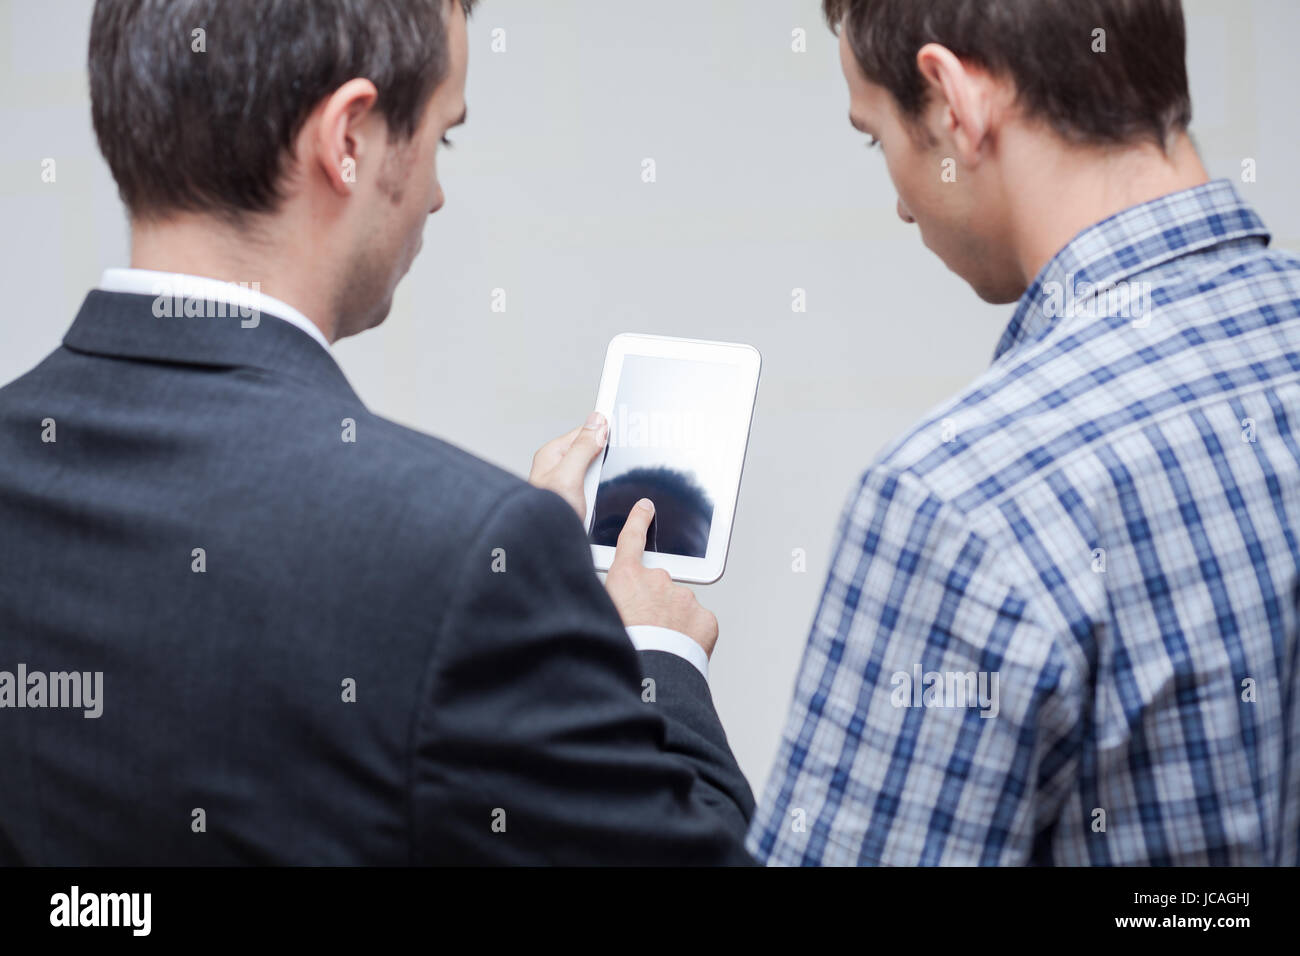 Vue arrière des deux hommes d'using digital tablet. Banque D'Images